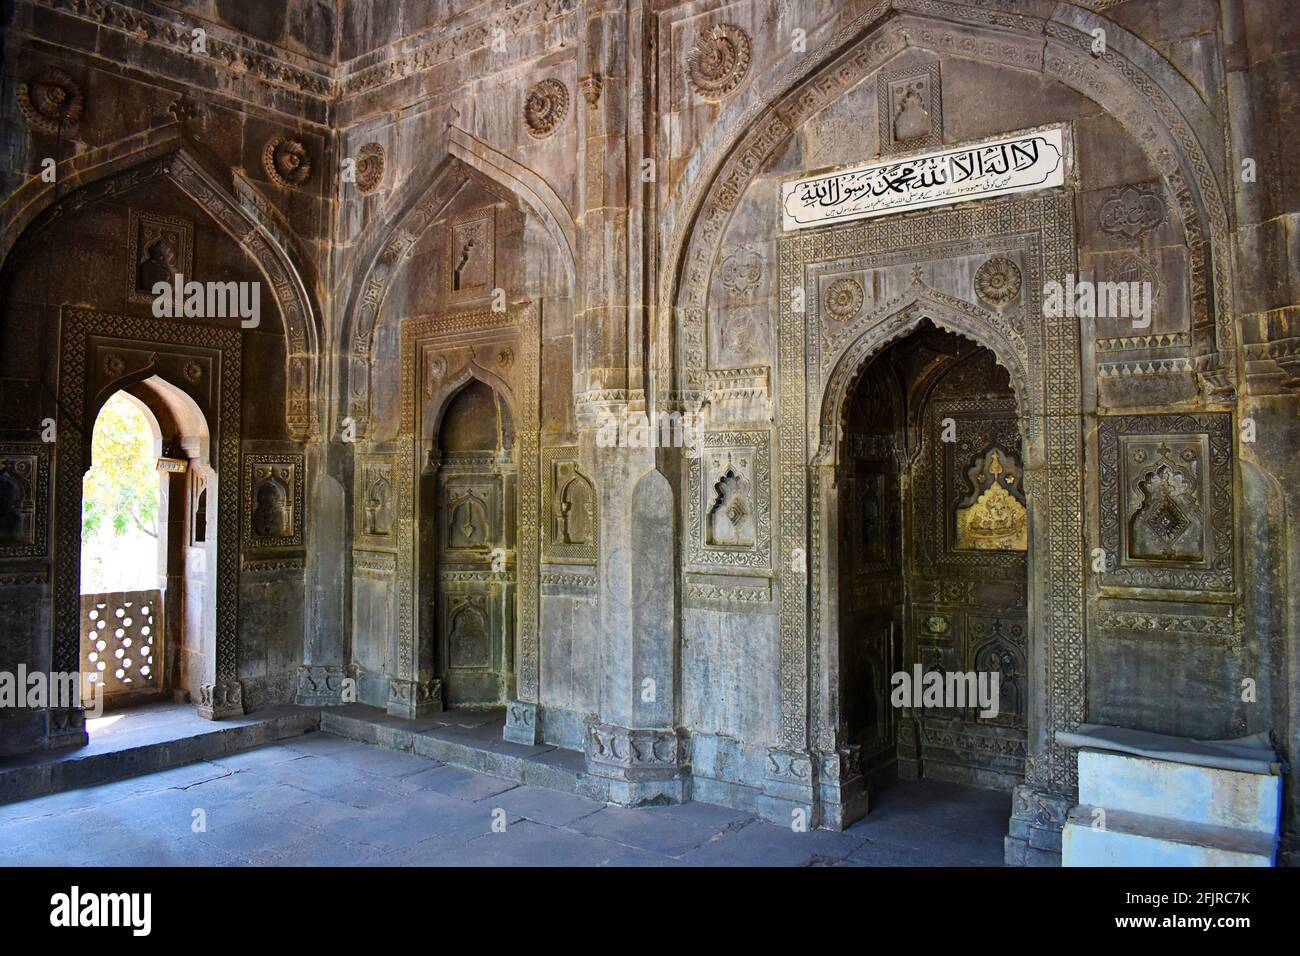 Stein geschnitzte Bögen der Haupthalle von Damdi Masjid, eines der auffälligsten Stücke der historischen islamischen Architektur, Ahmednagar, Maharashtra, Indien. Stockfoto